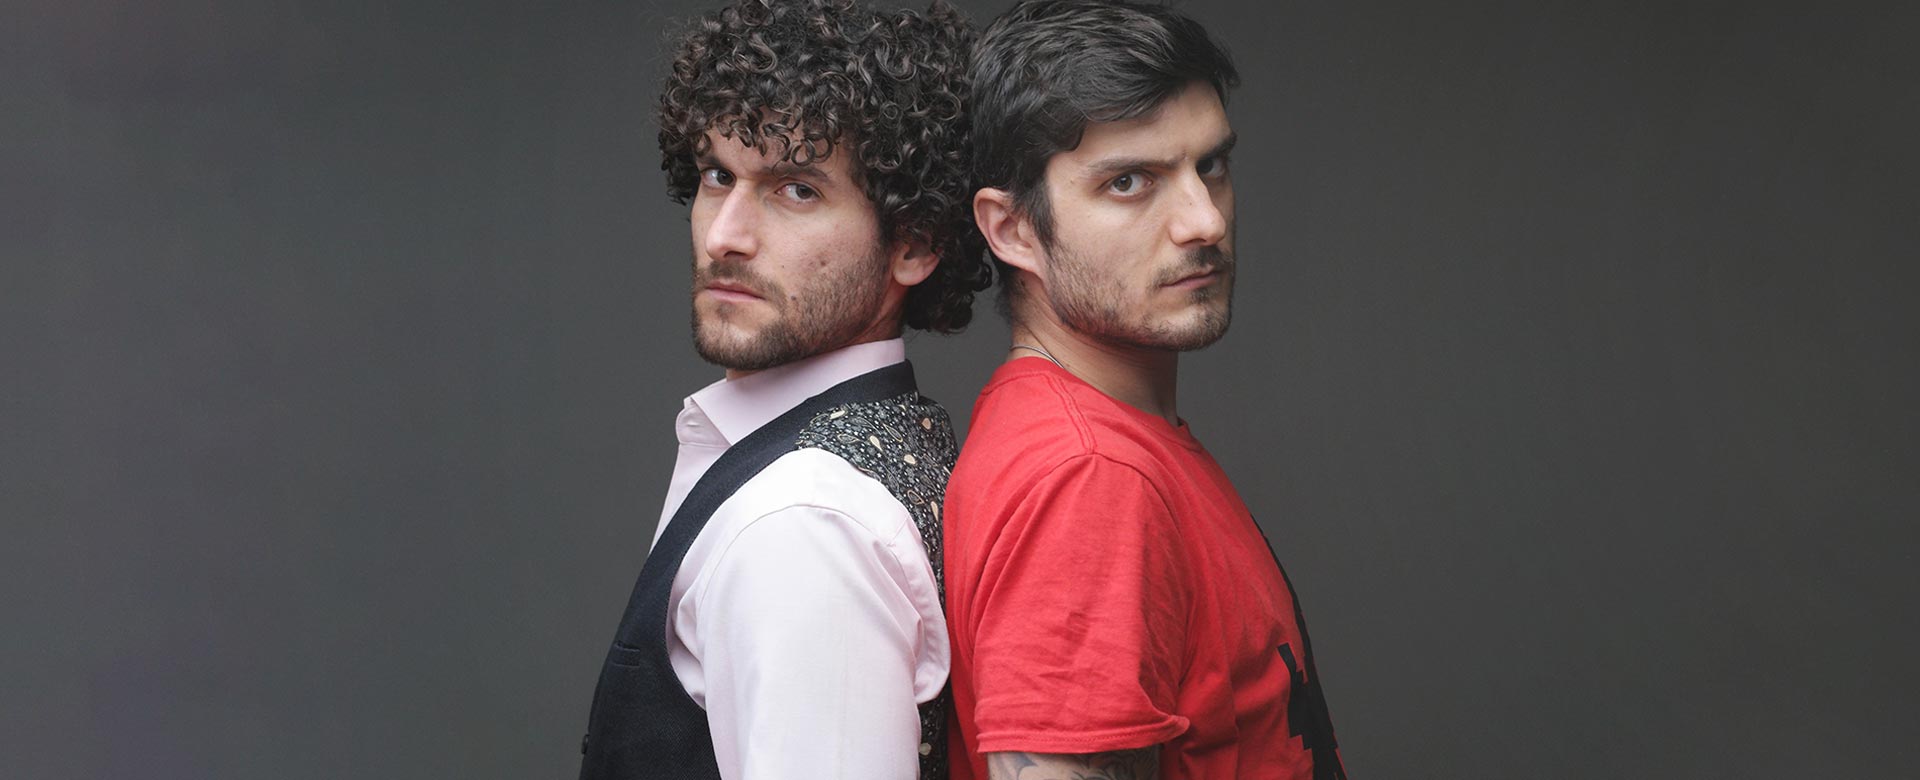 Fabrizio e Claudio Colica, alias il duo comico del web Le Coliche